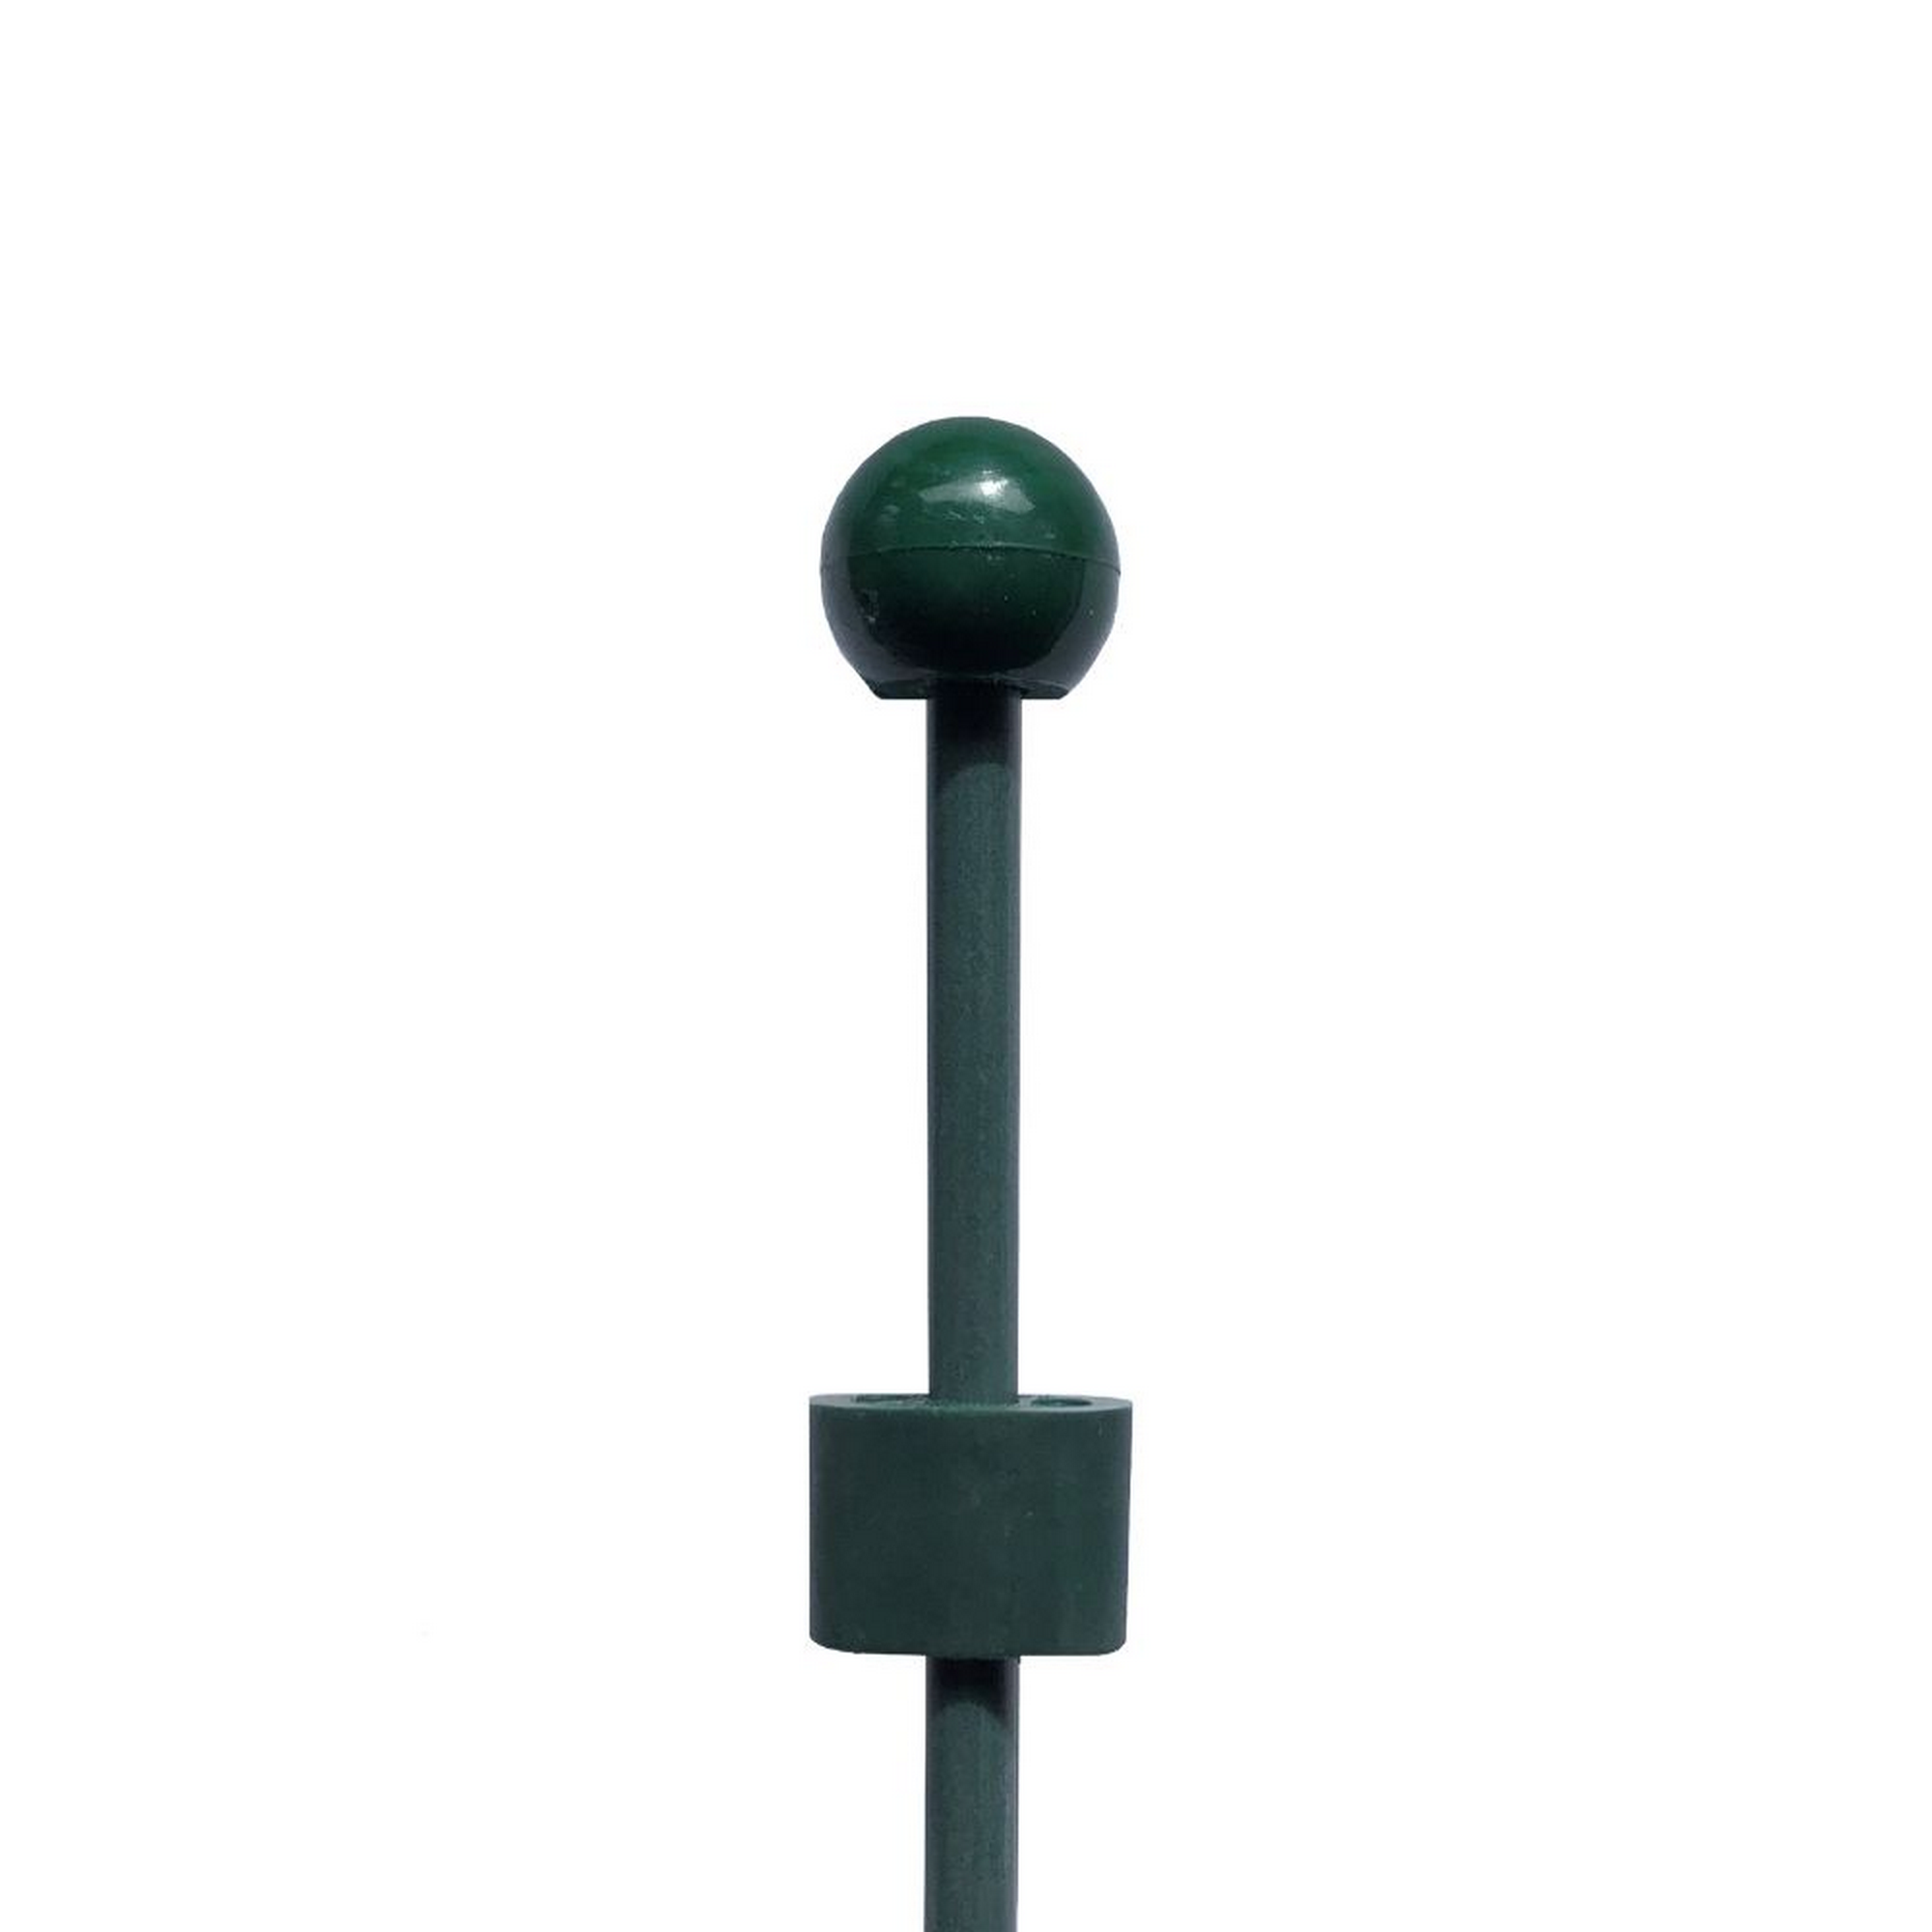 Pinnup-Bodenstab mit Kupplung Glasfiber grün Ø 0,8 x 50 cm + product picture